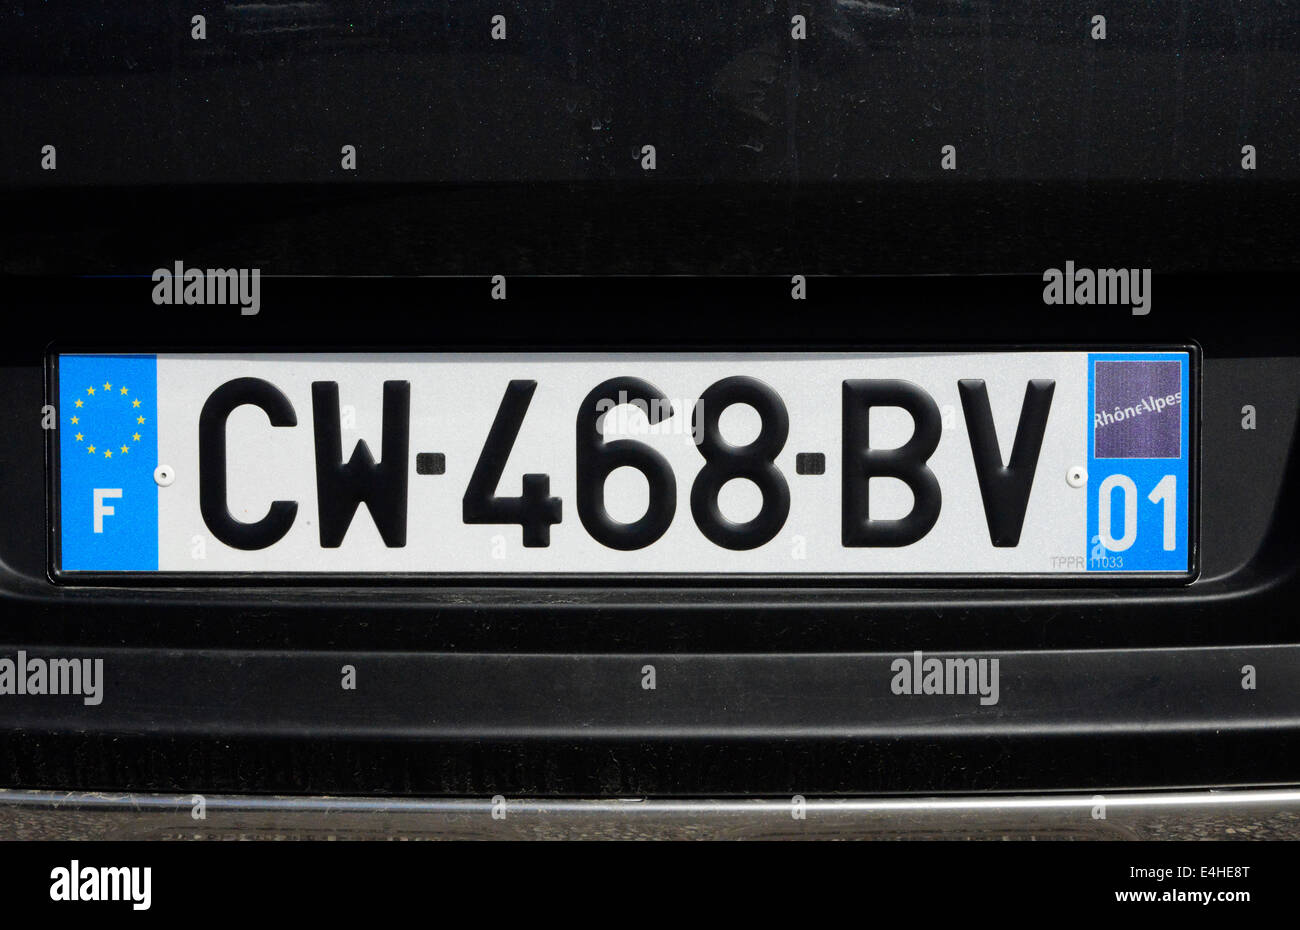 Auto-Kfz-Kennzeichen Frankreich Europa-Lizenz Stockfotografie - Alamy